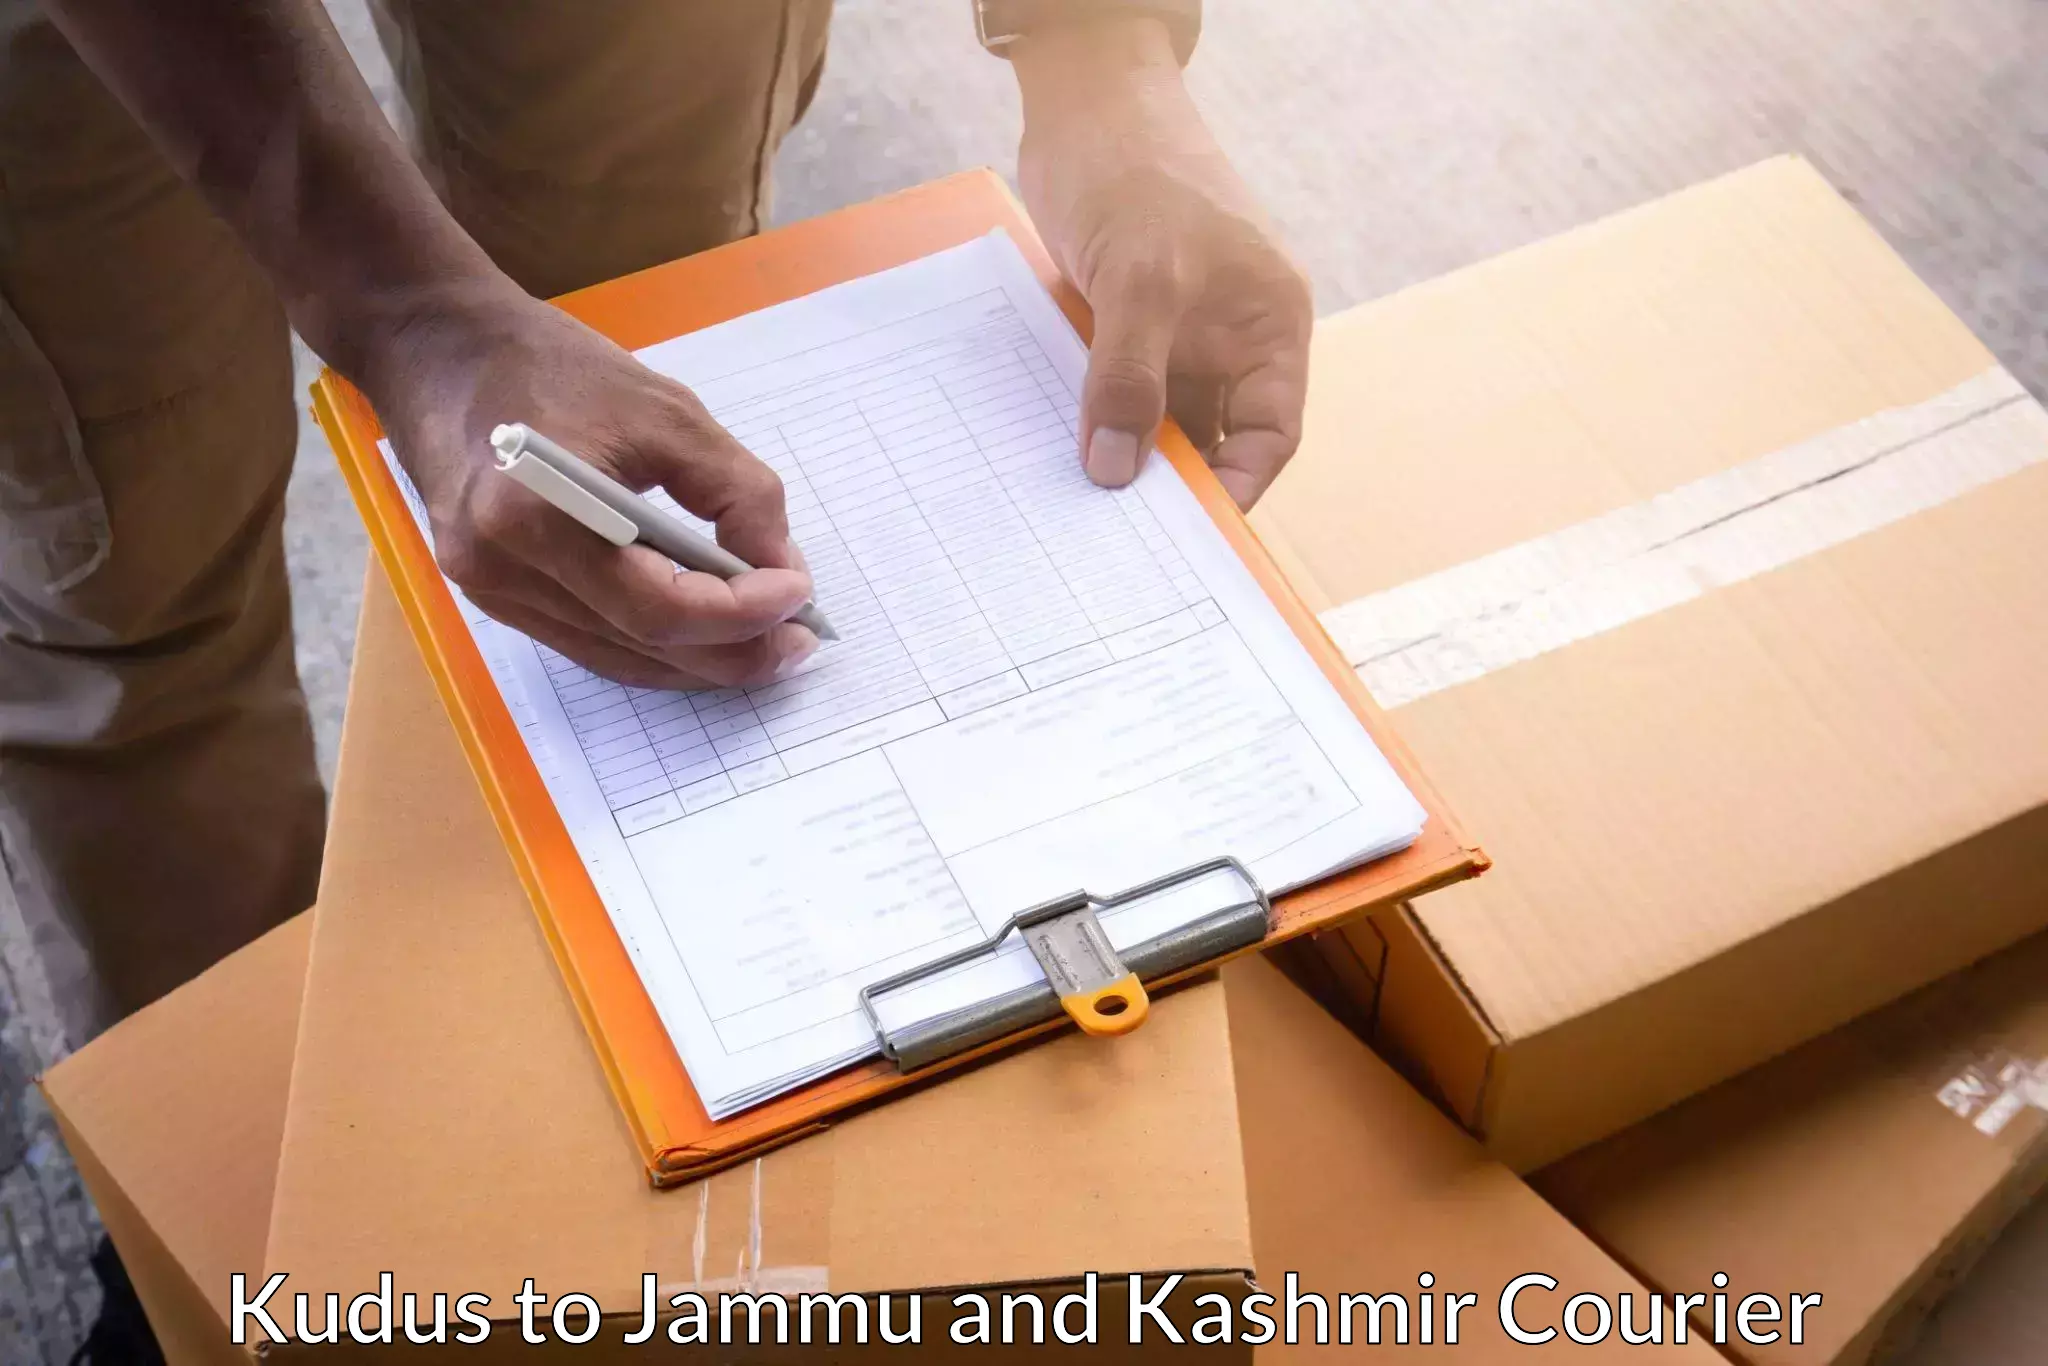 Urgent courier needs Kudus to IIT Jammu